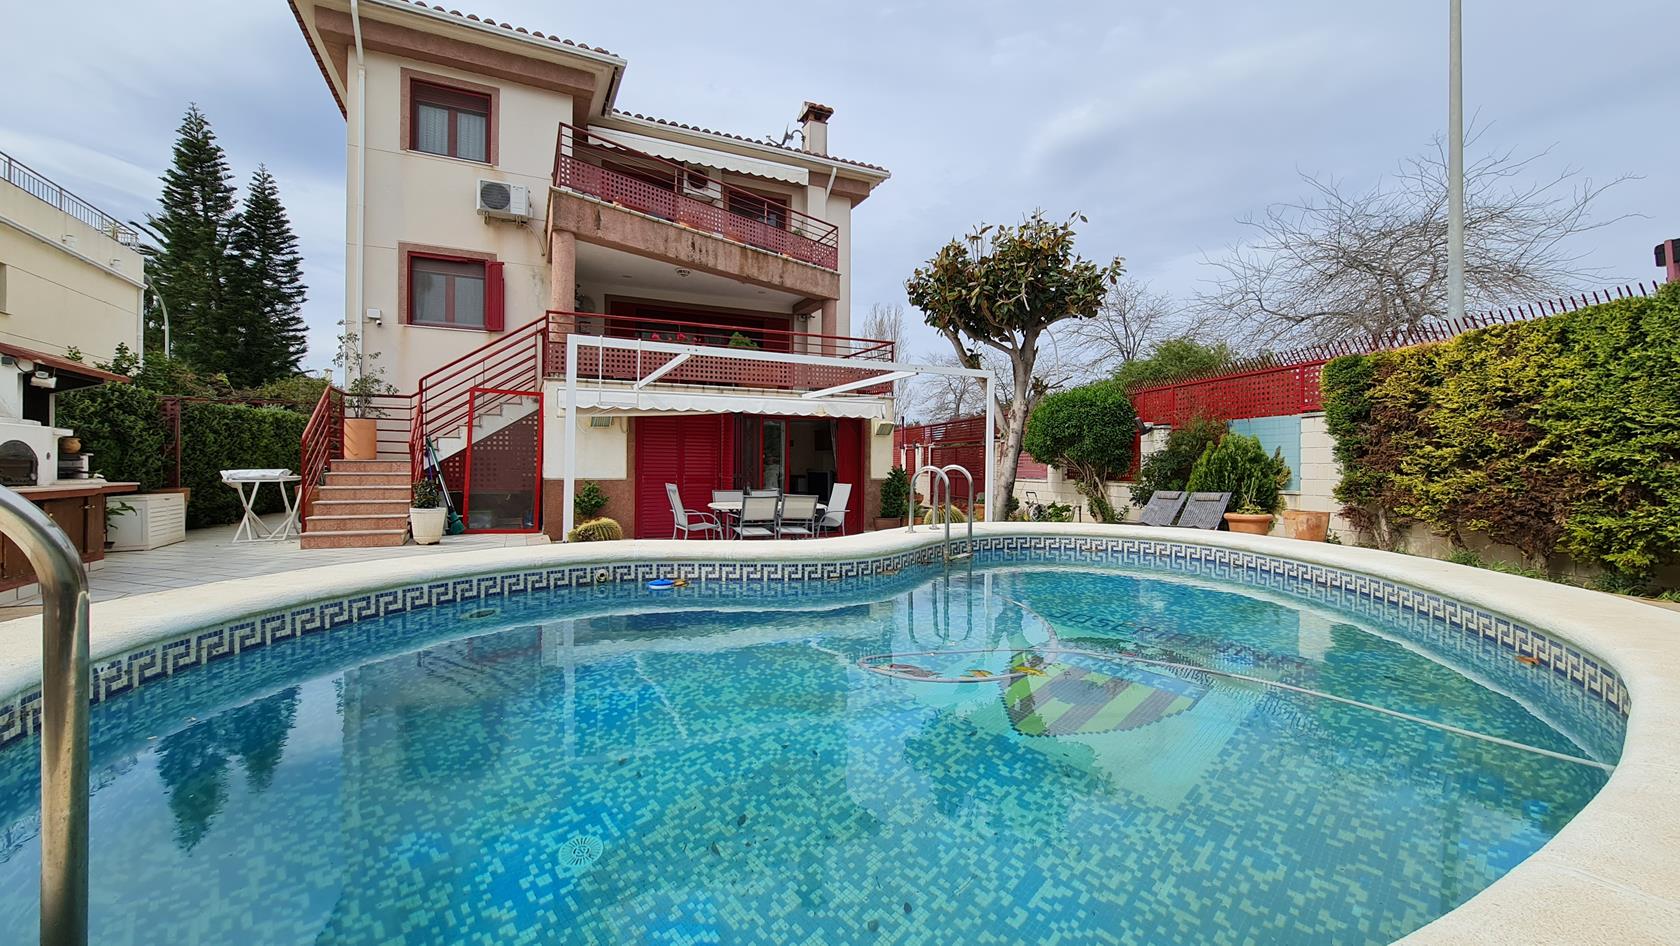 Fantastico Chalet independiente con piscina, jardin, garaje....